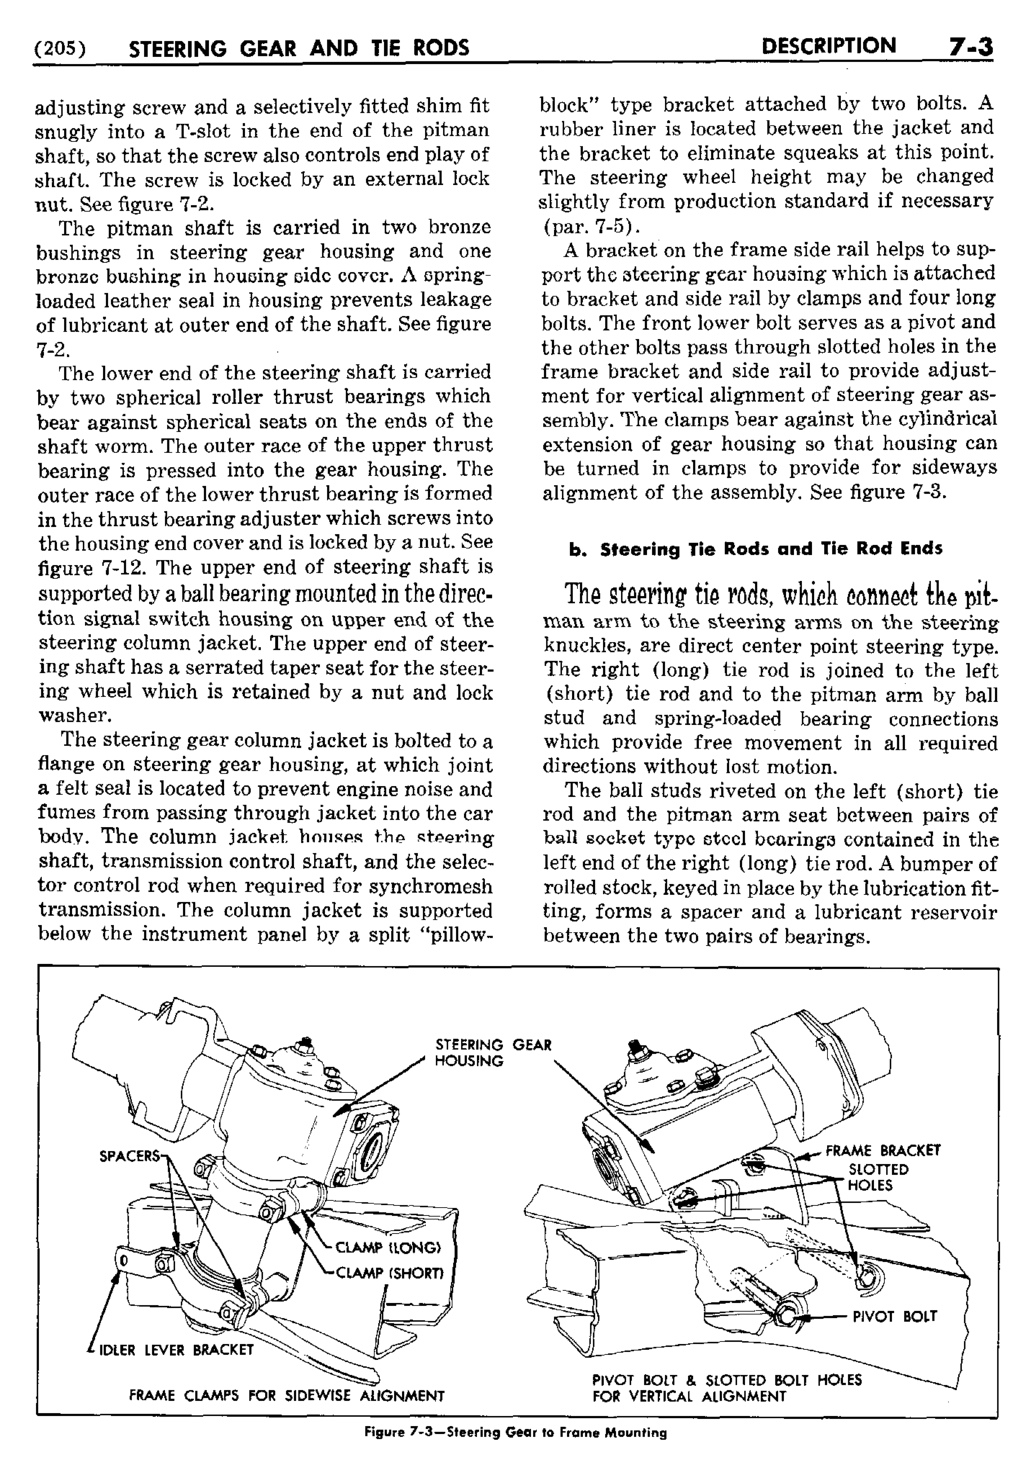 n_08 1950 Buick Shop Manual - Steering-003-003.jpg